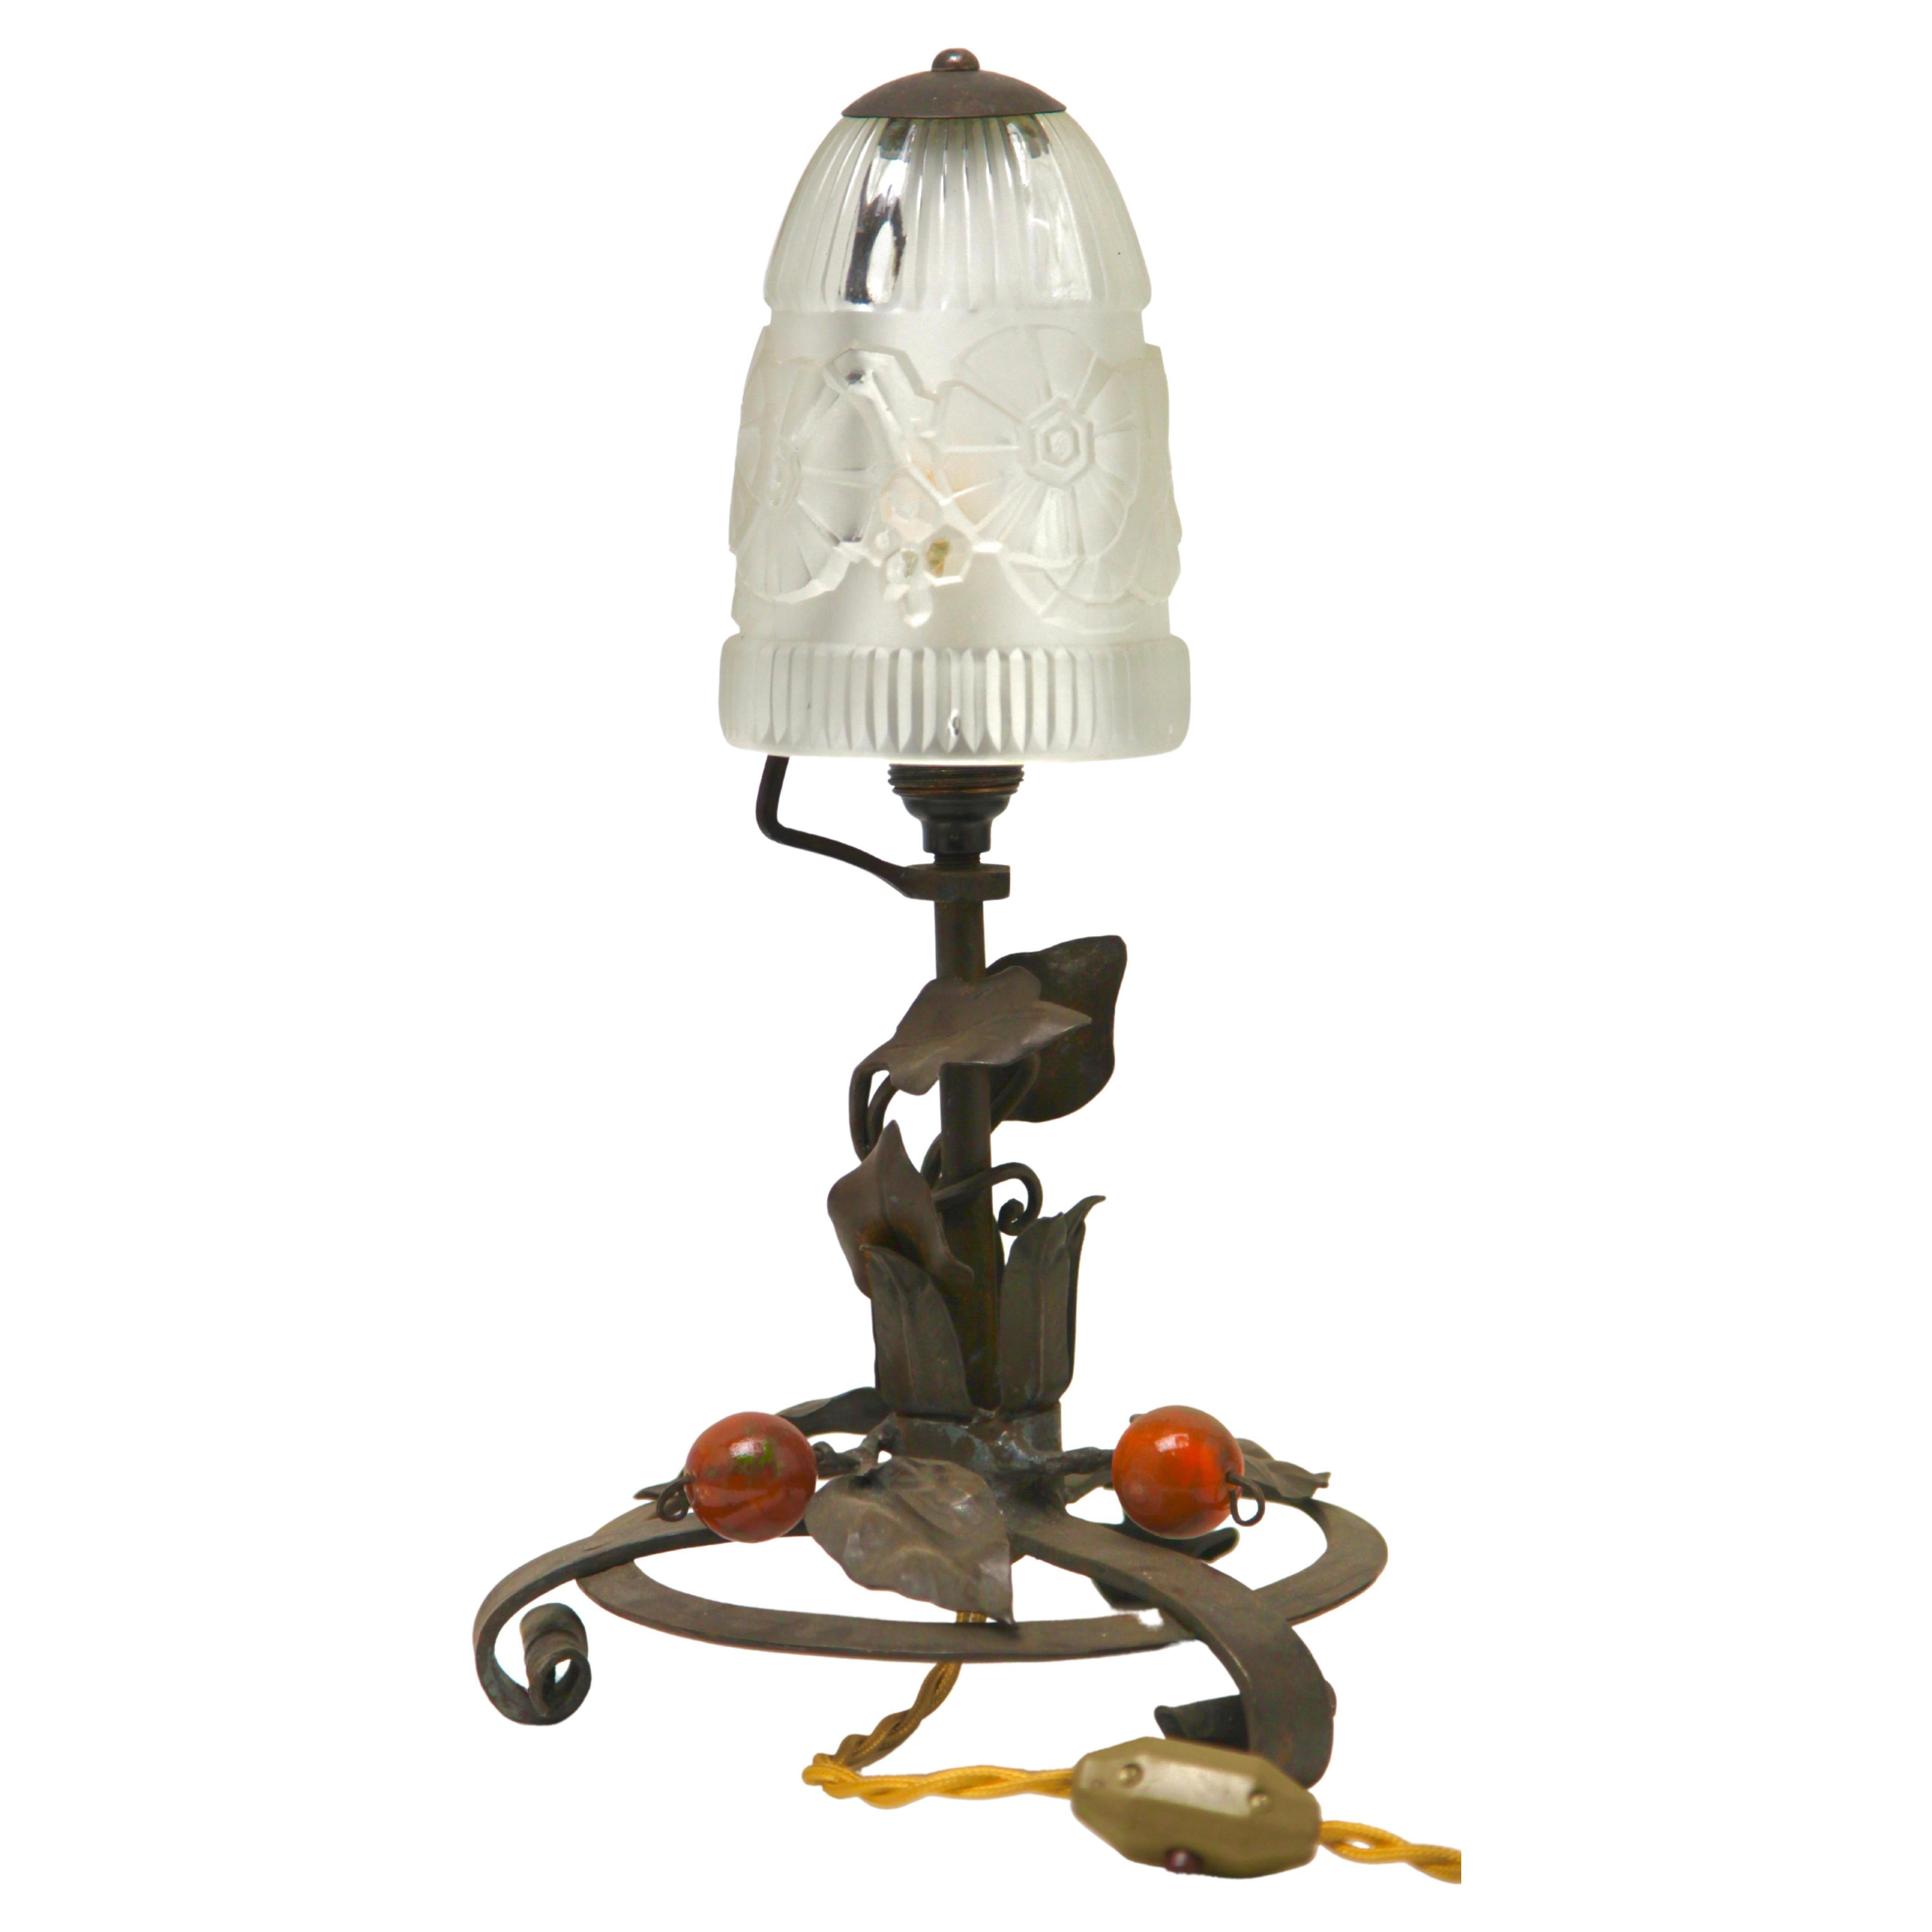 Lampe Art nouveau française en fer forgé avec abat-jour en verre, années 1920